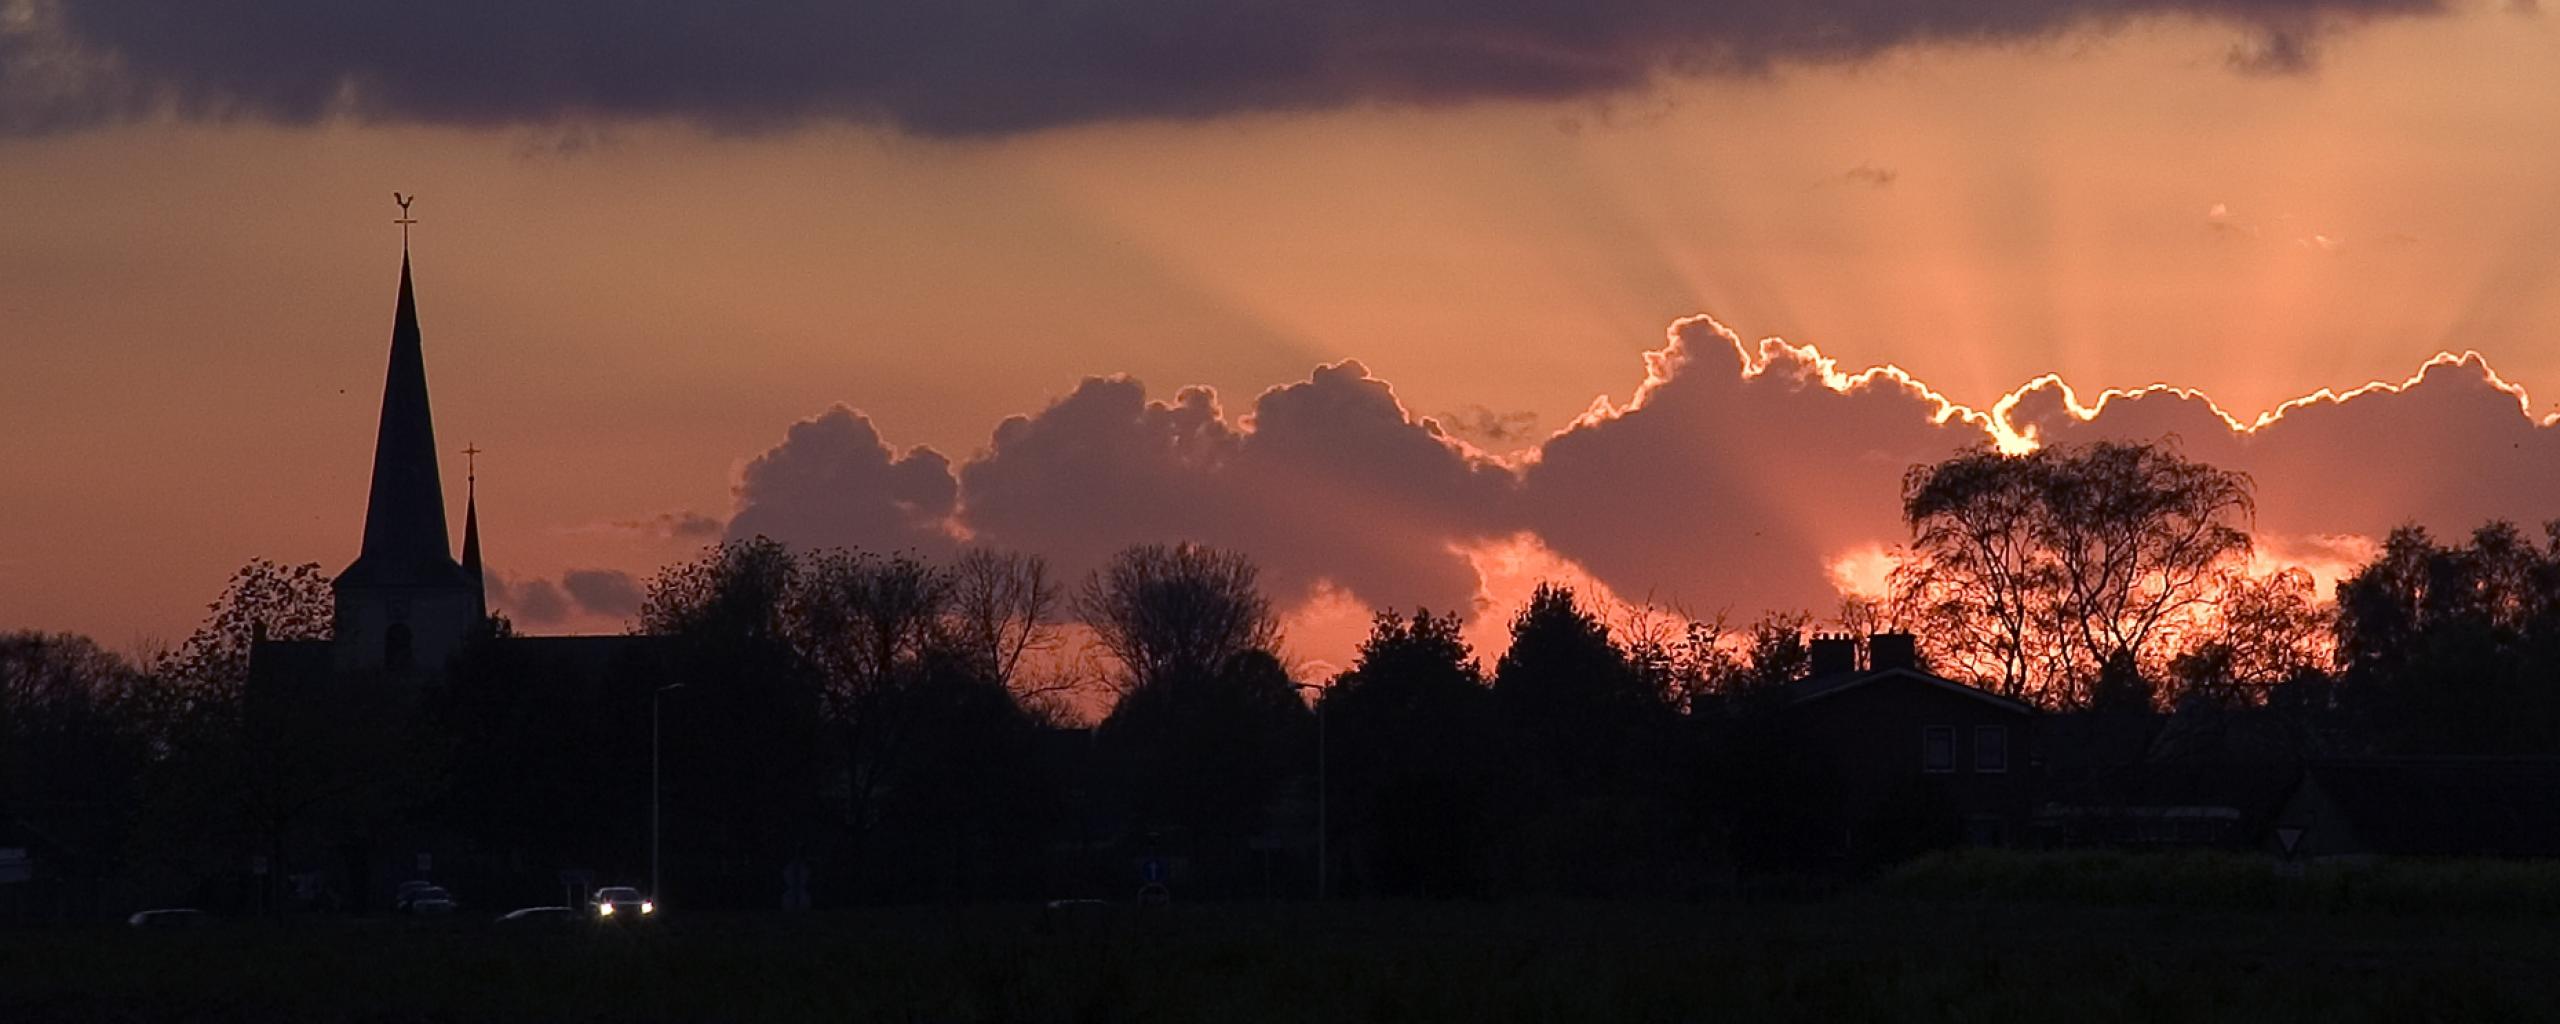 We zien de wolken en een oranje lucht waarin de zon ondergaat. Links in beeld is de kerktoren van Posterholt te zien.